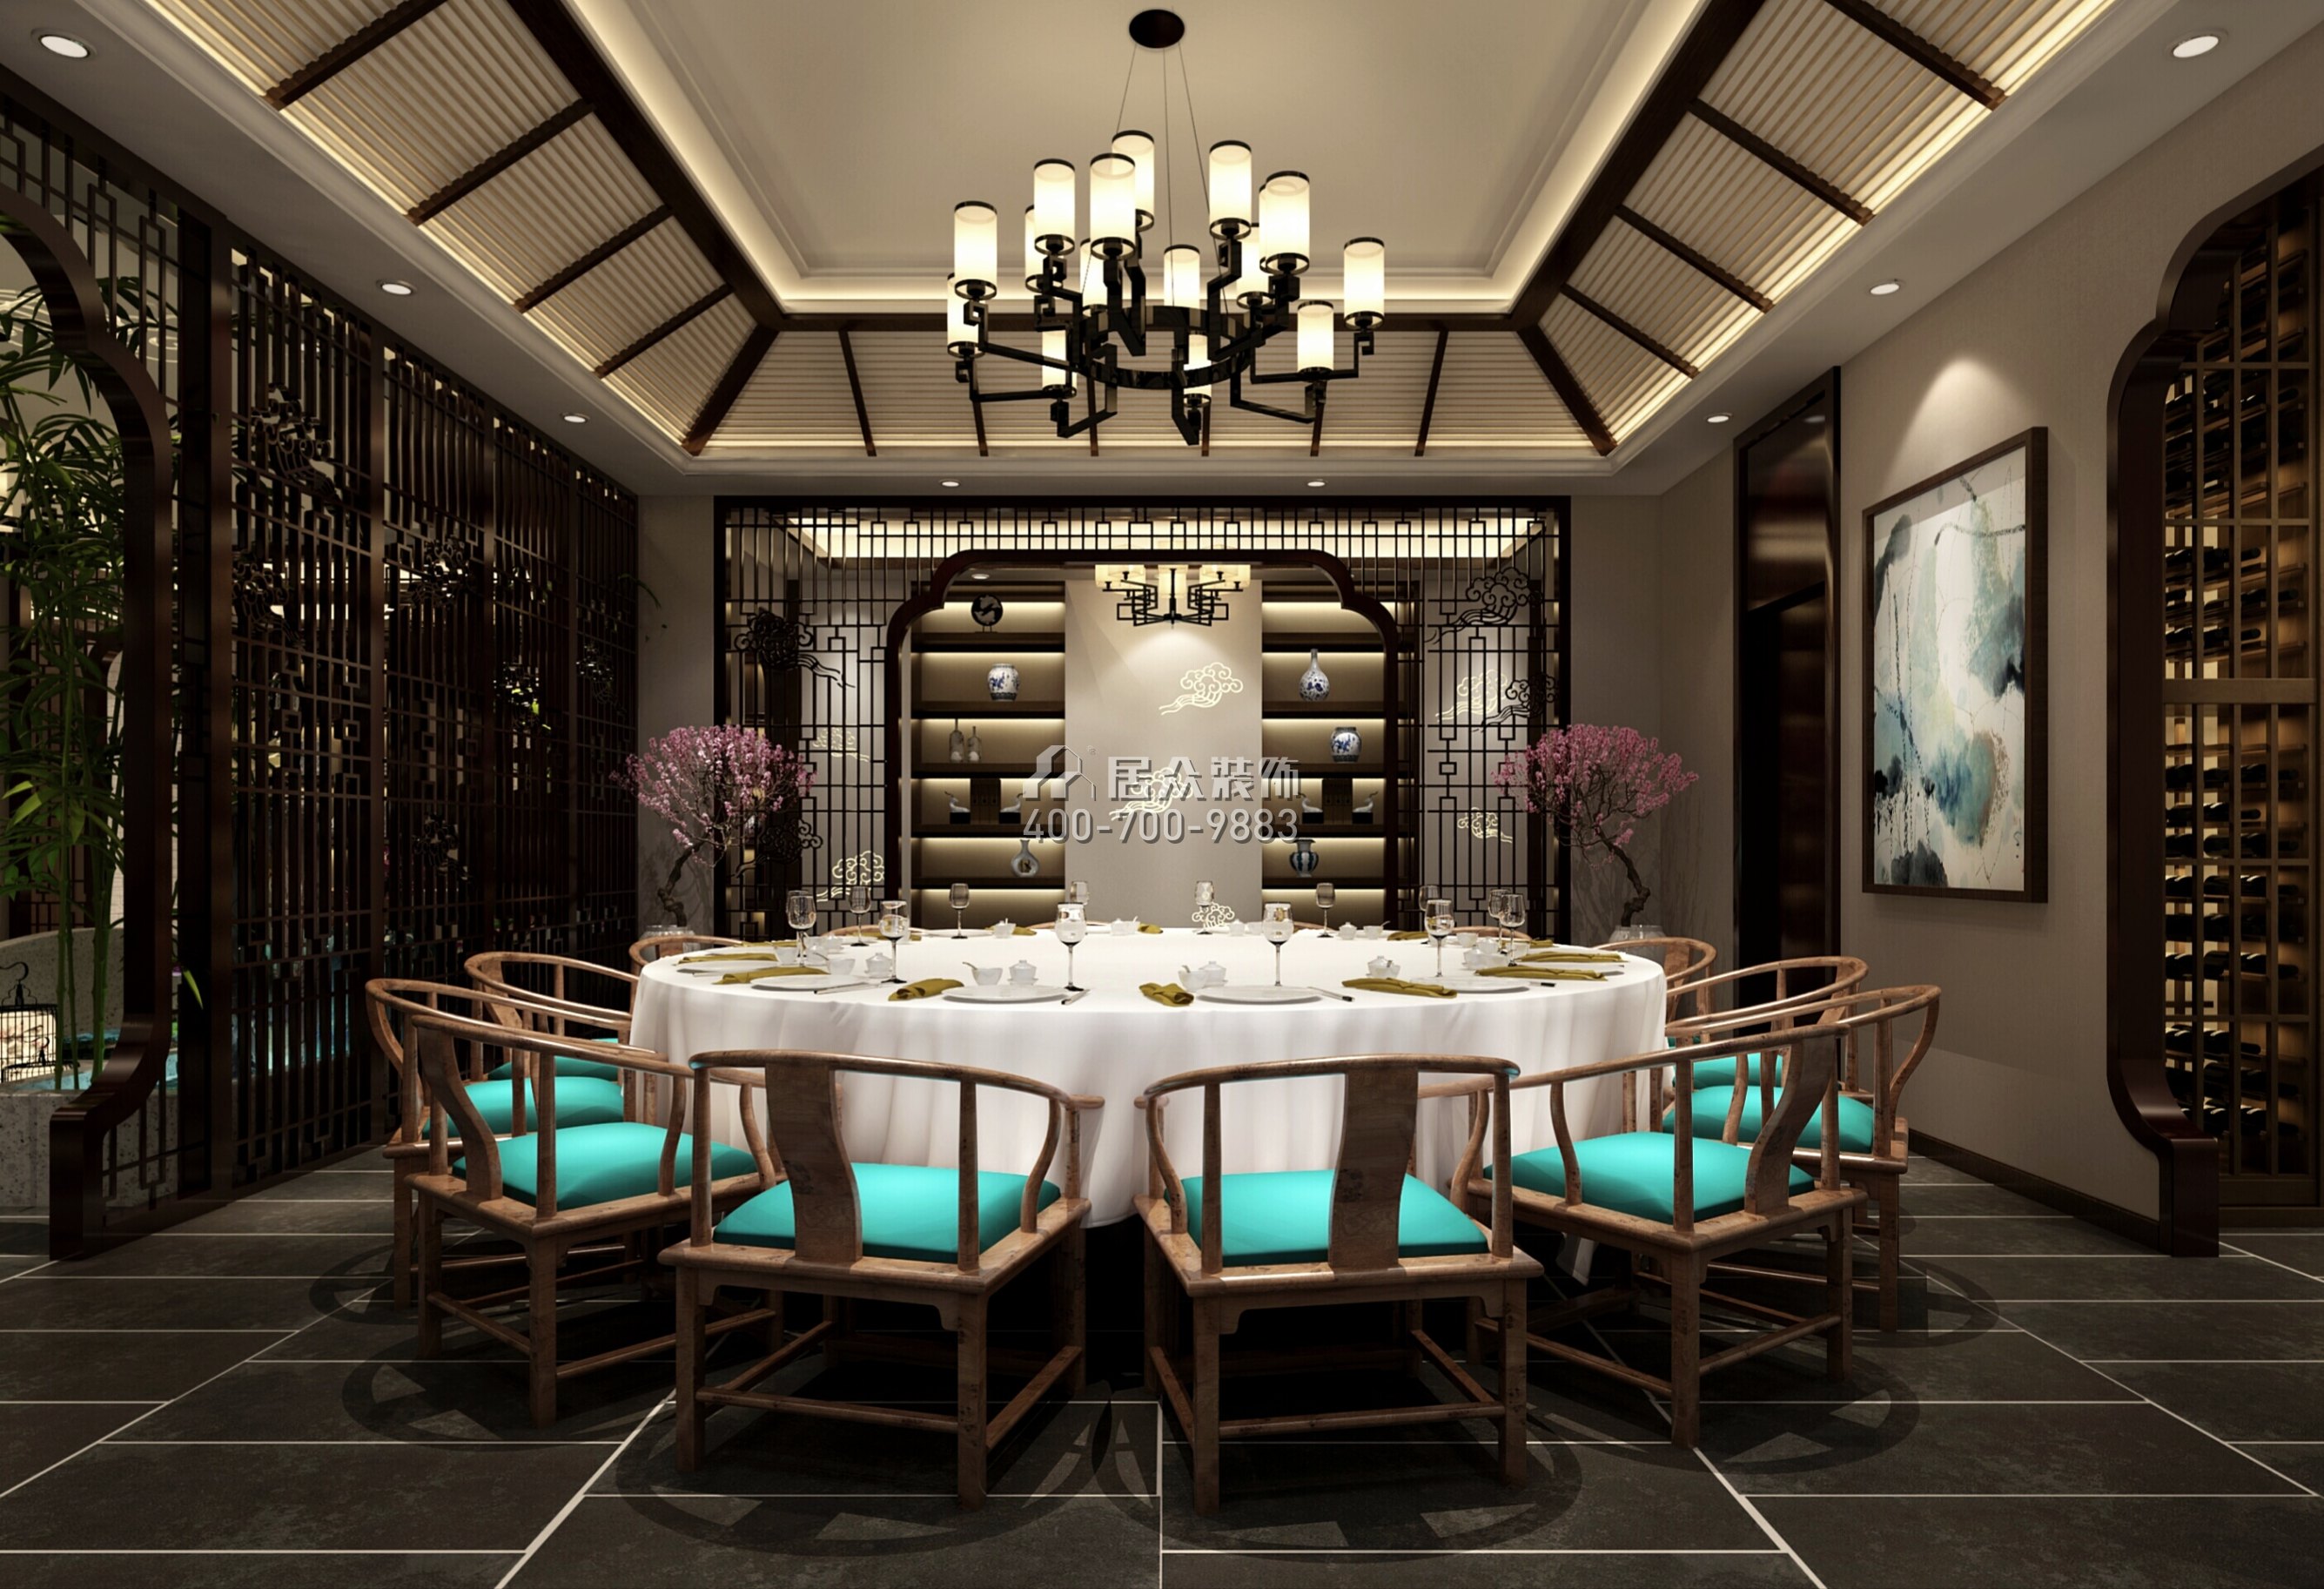 自建房1000平方米中式风格别墅户型餐厅装修效果图